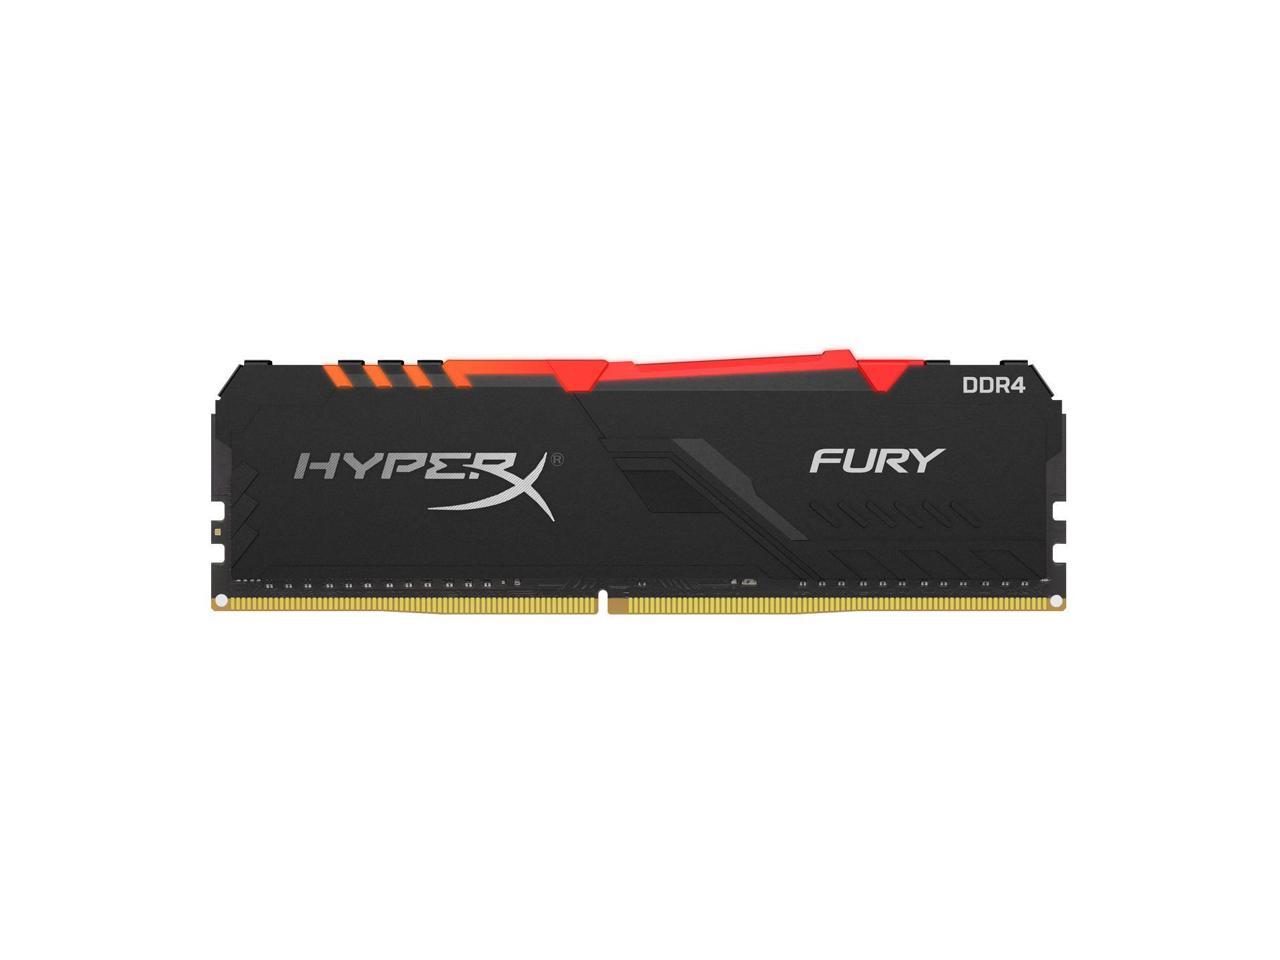 Hyperx Fury 16Gb Ddr4 Sdram Memory Module